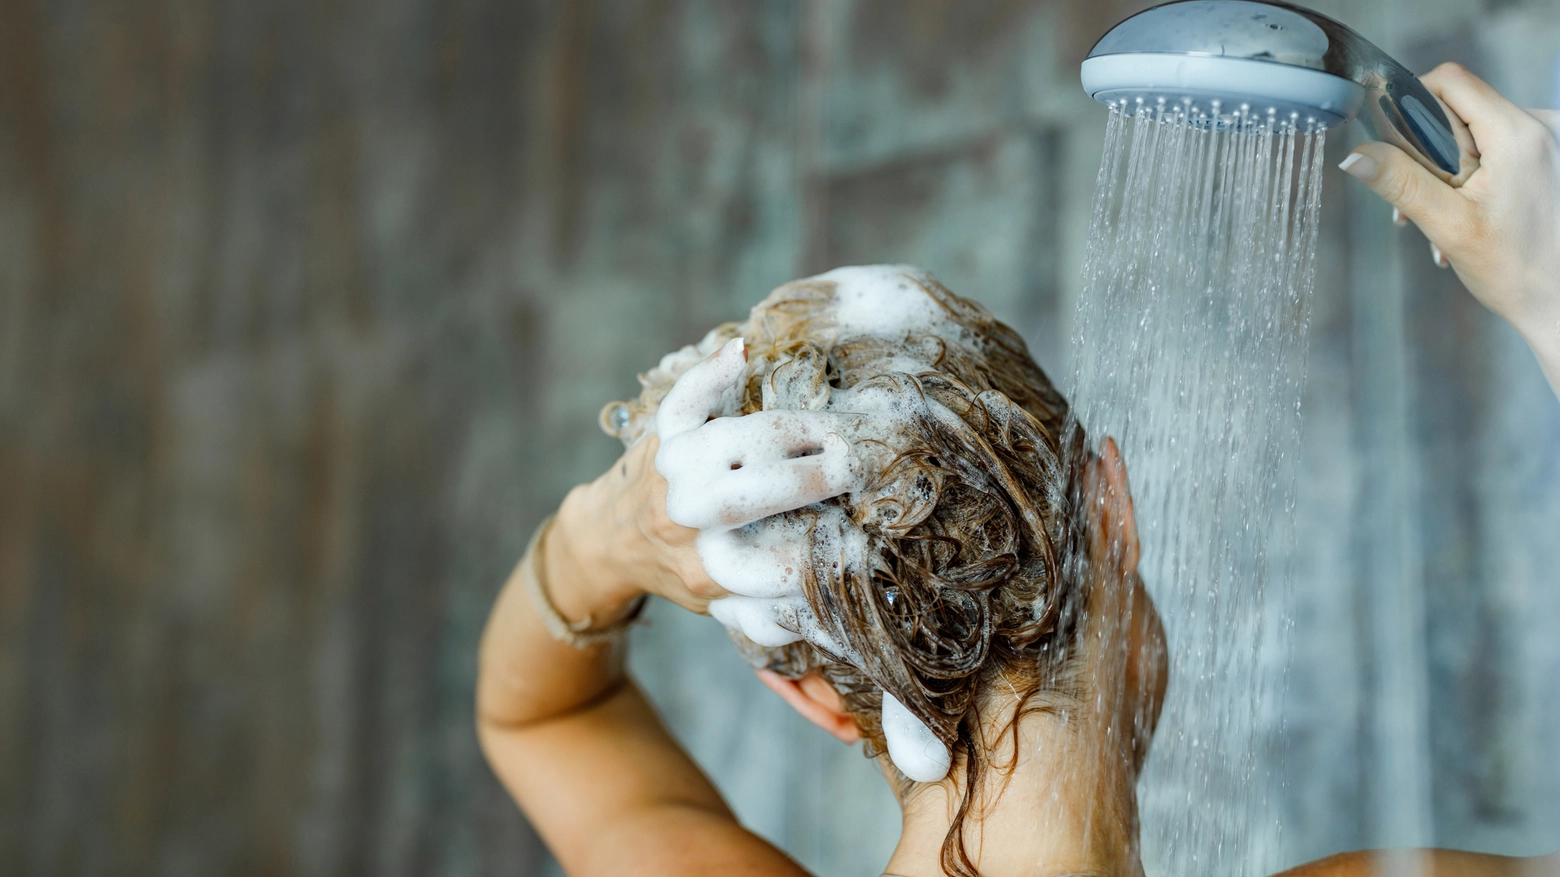 Acqua, ordinanza anti spreco nel Trevigiano: Usate la doccia non la vasca